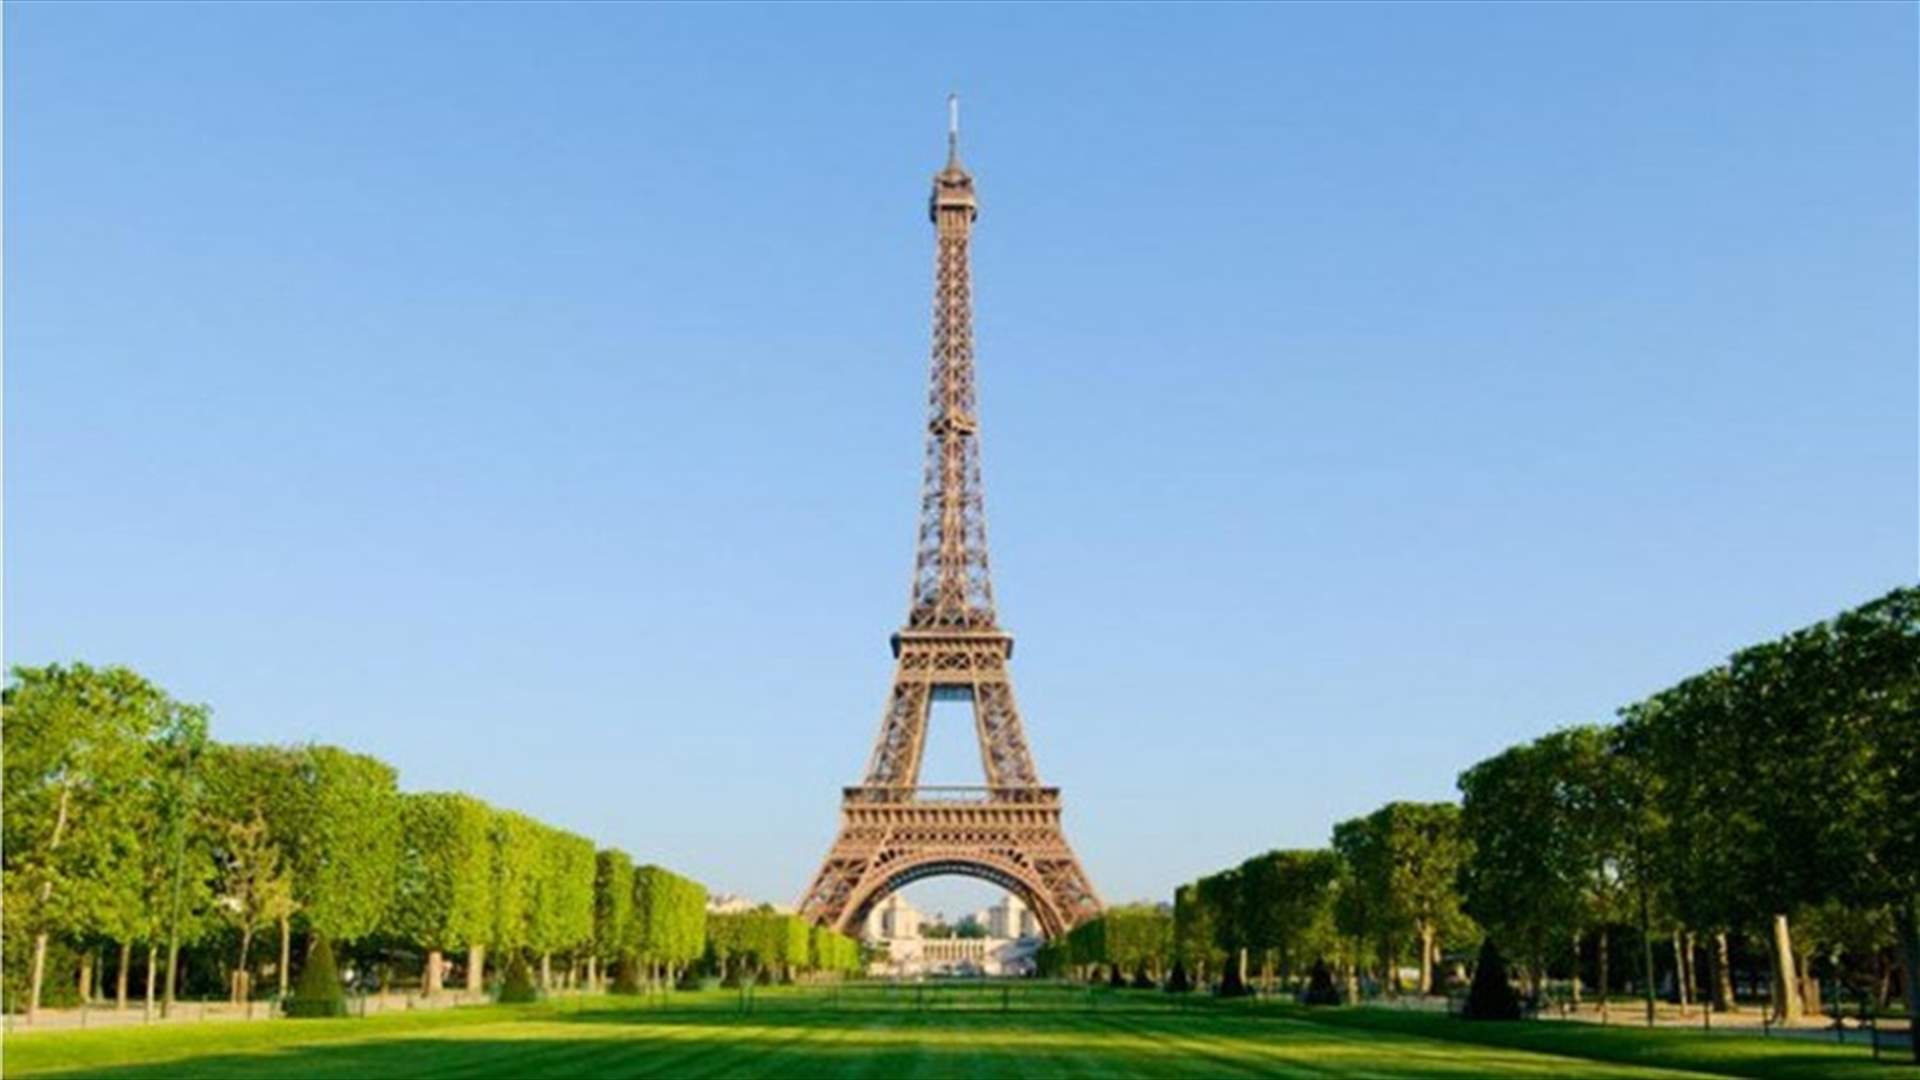 Eiffel Tower To Get Anti-Terrorist Glass Barrier Round Base